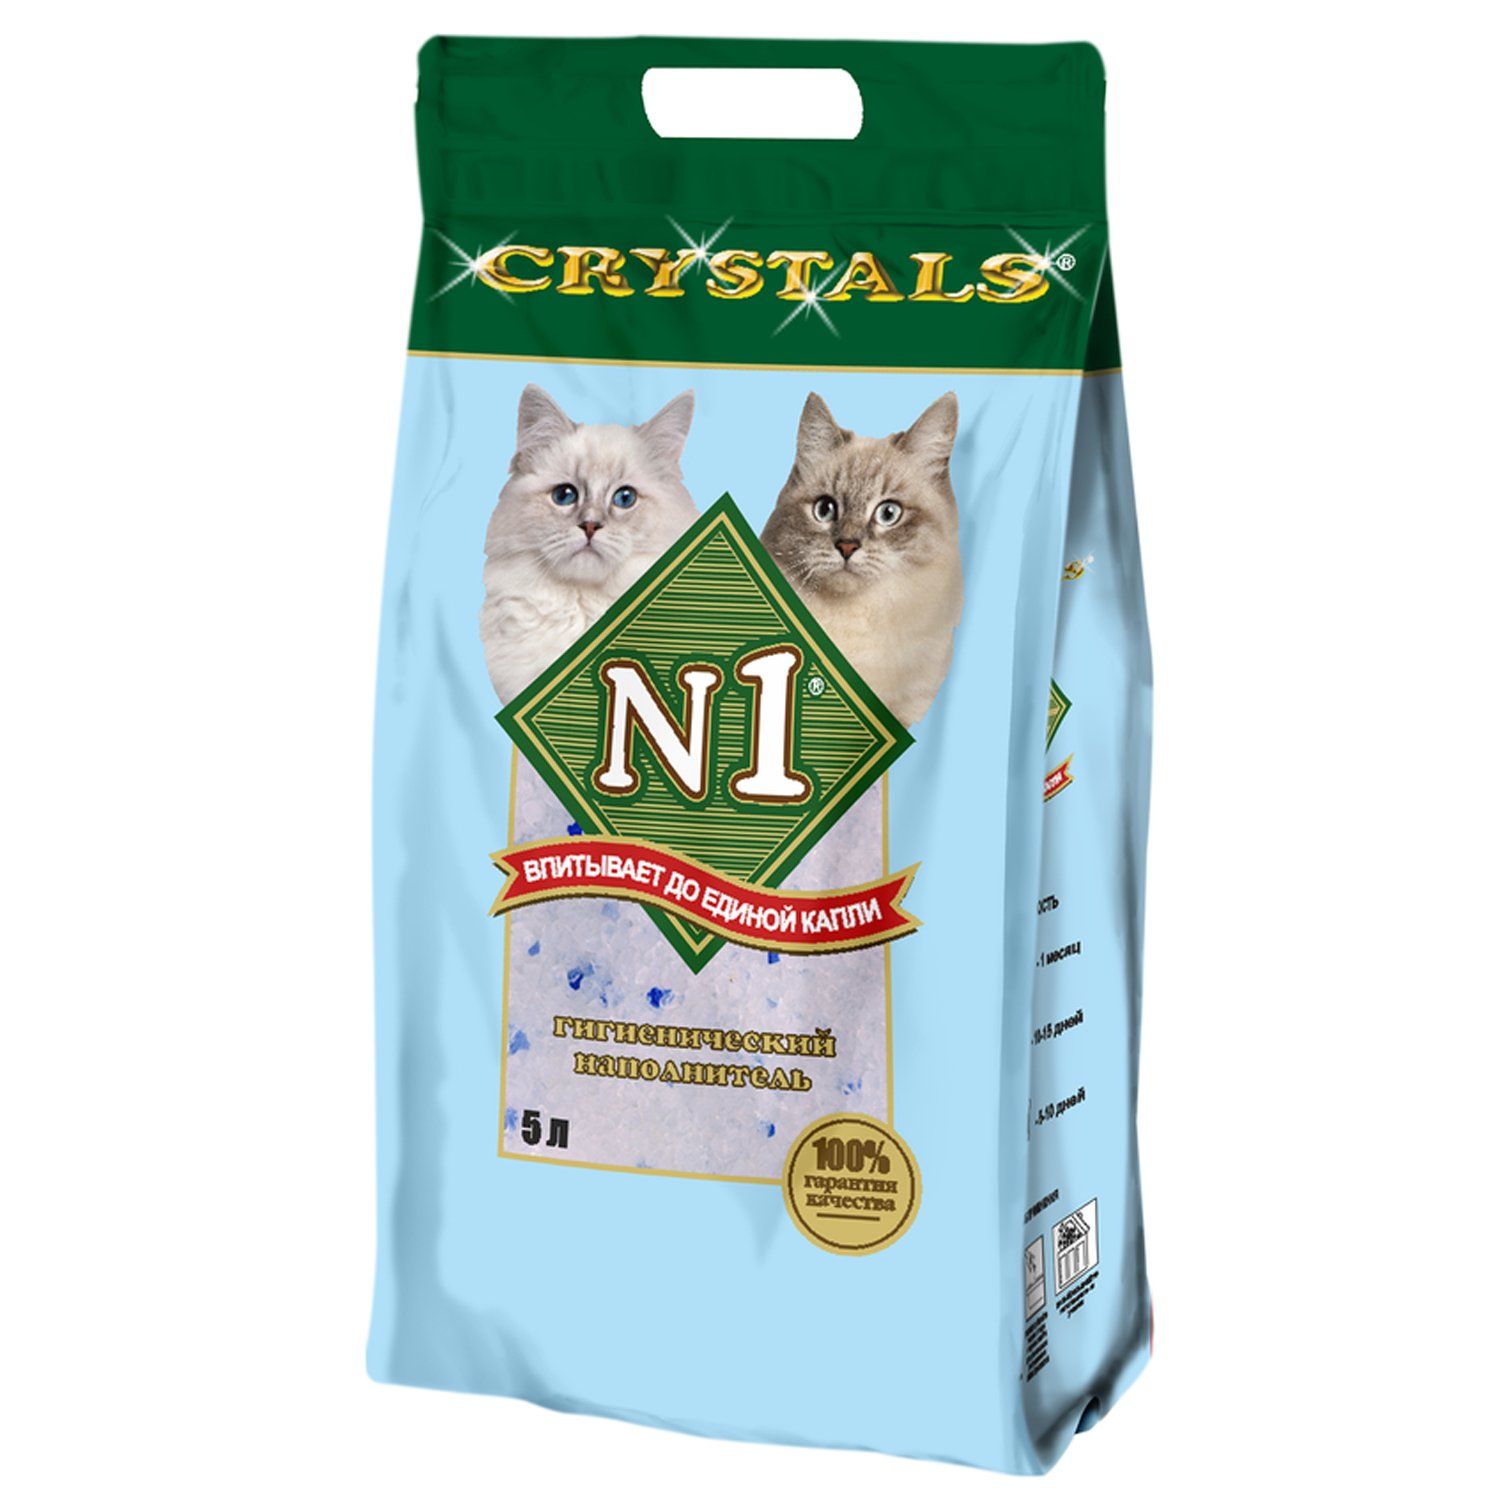 Какой лучше выбрать наполнитель для кошачьего туалета. N1 Crystals наполнитель силикагелевый 5л. Впитывающий наполнитель n1 Crystals 12.5 л. №1 Crystals наполнитель силикагелевый 30л. Комкующийся наполнитель n1 Crystals Compact 10 л.